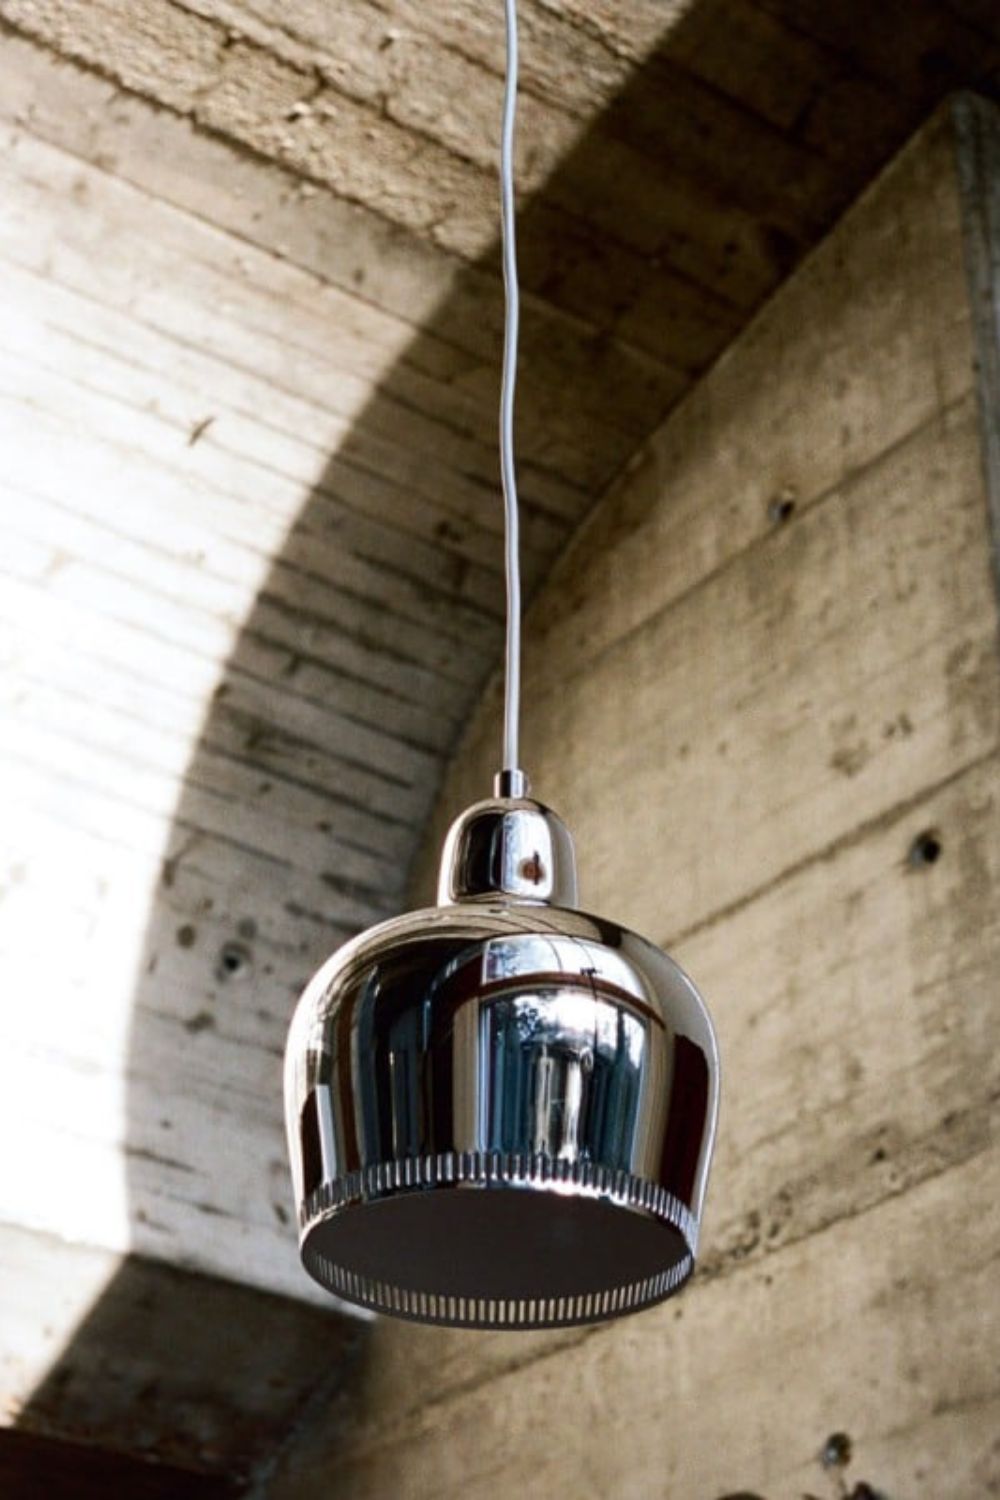 Golden Bell Pendant Lamp - SamuLighting